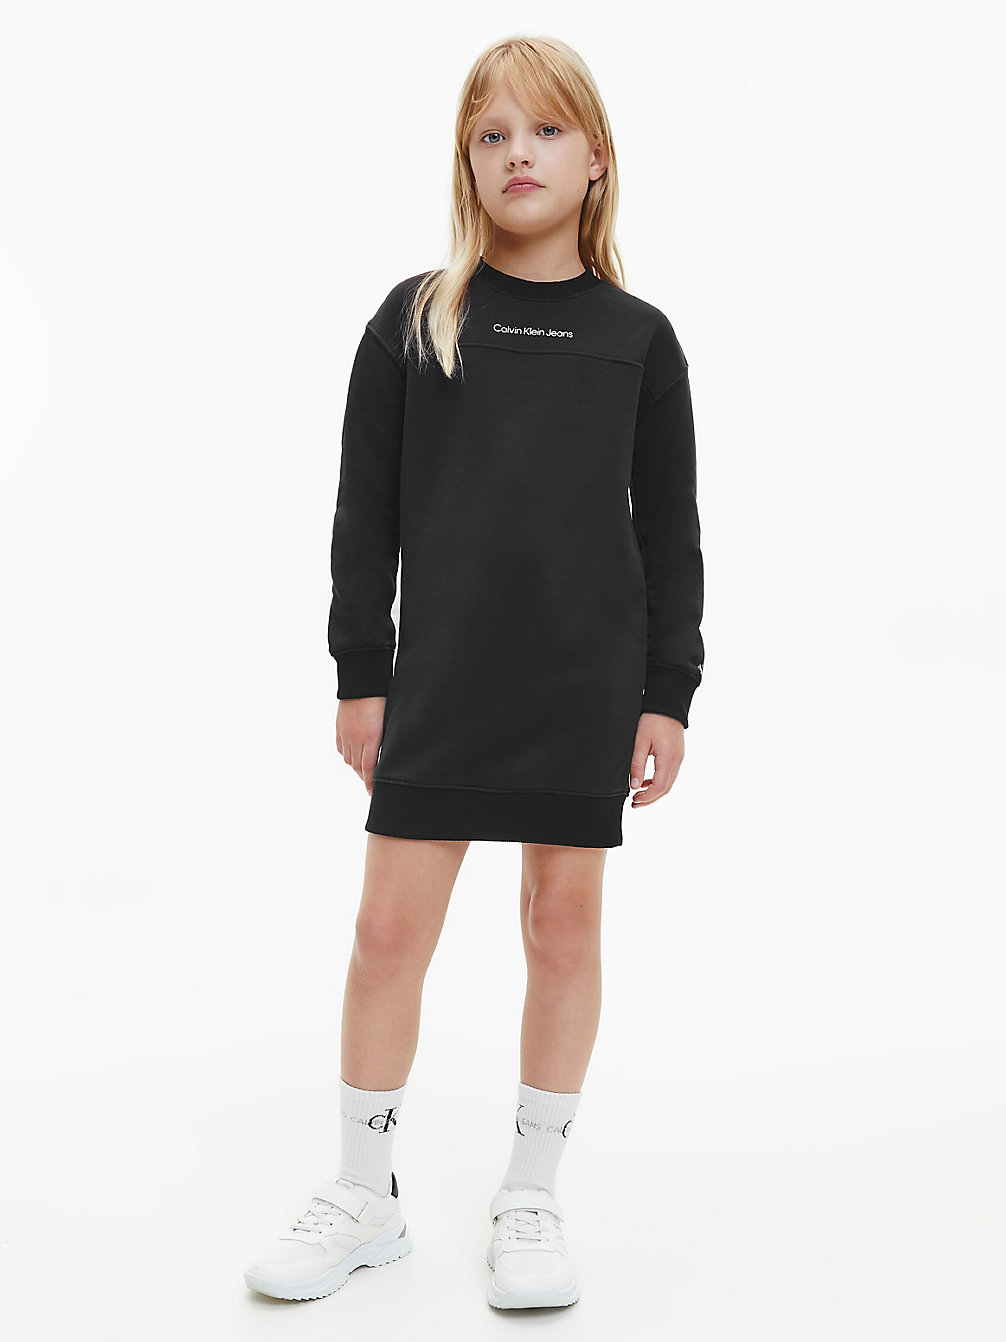 CK BLACK Robe Sweat undefined girls Calvin Klein